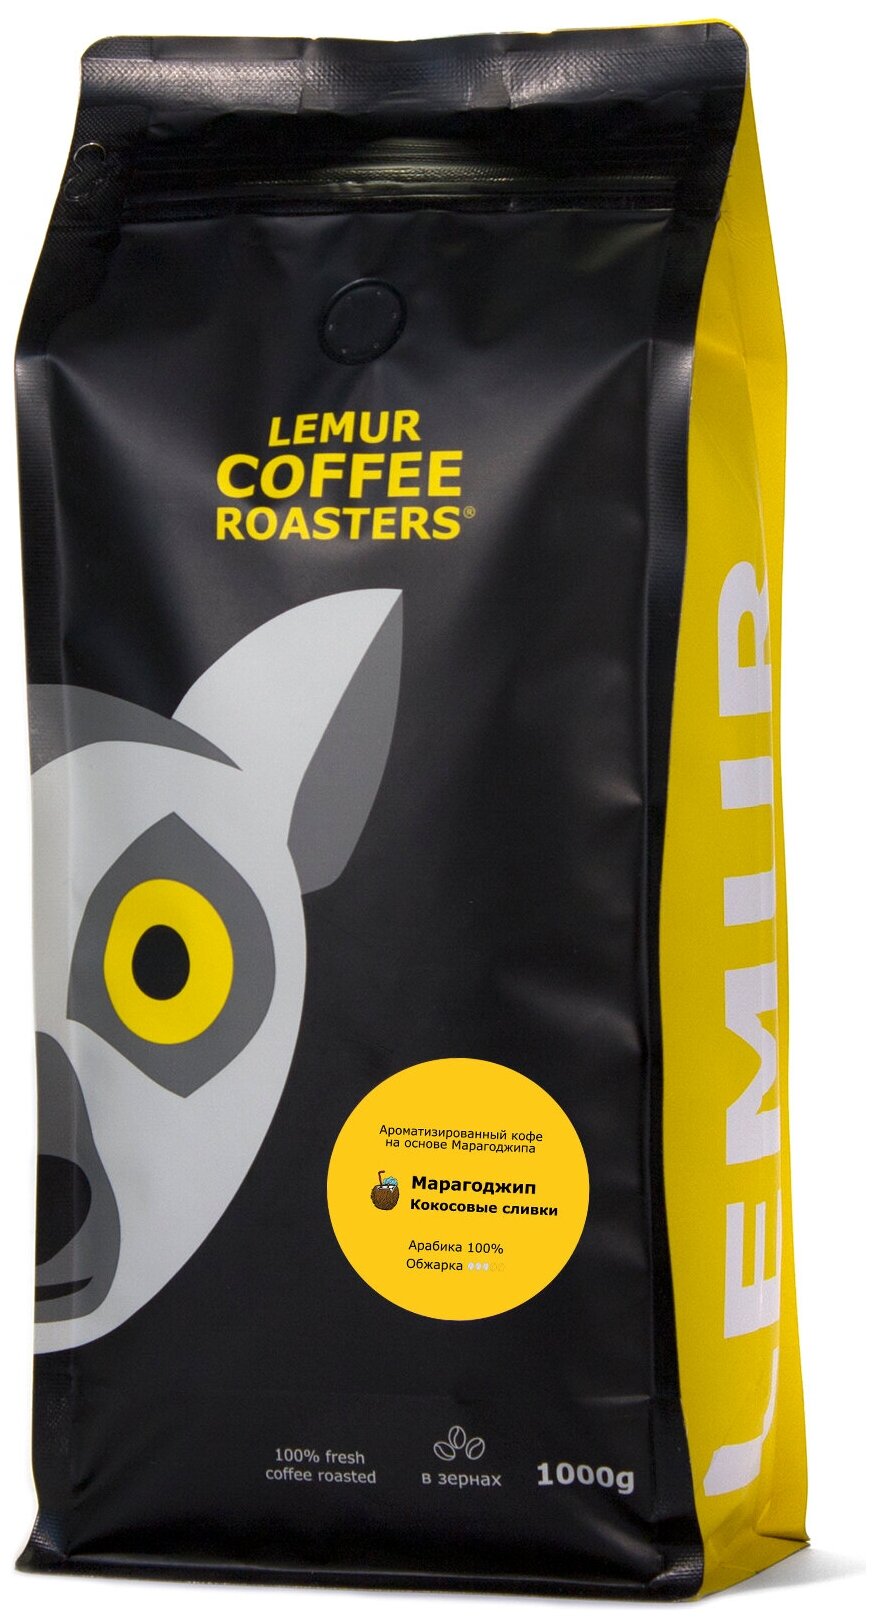 Ароматизированный кофе в зернах Марагоджип Кокосовые сливки Lemur Coffee Roasters, 1кг - фотография № 3